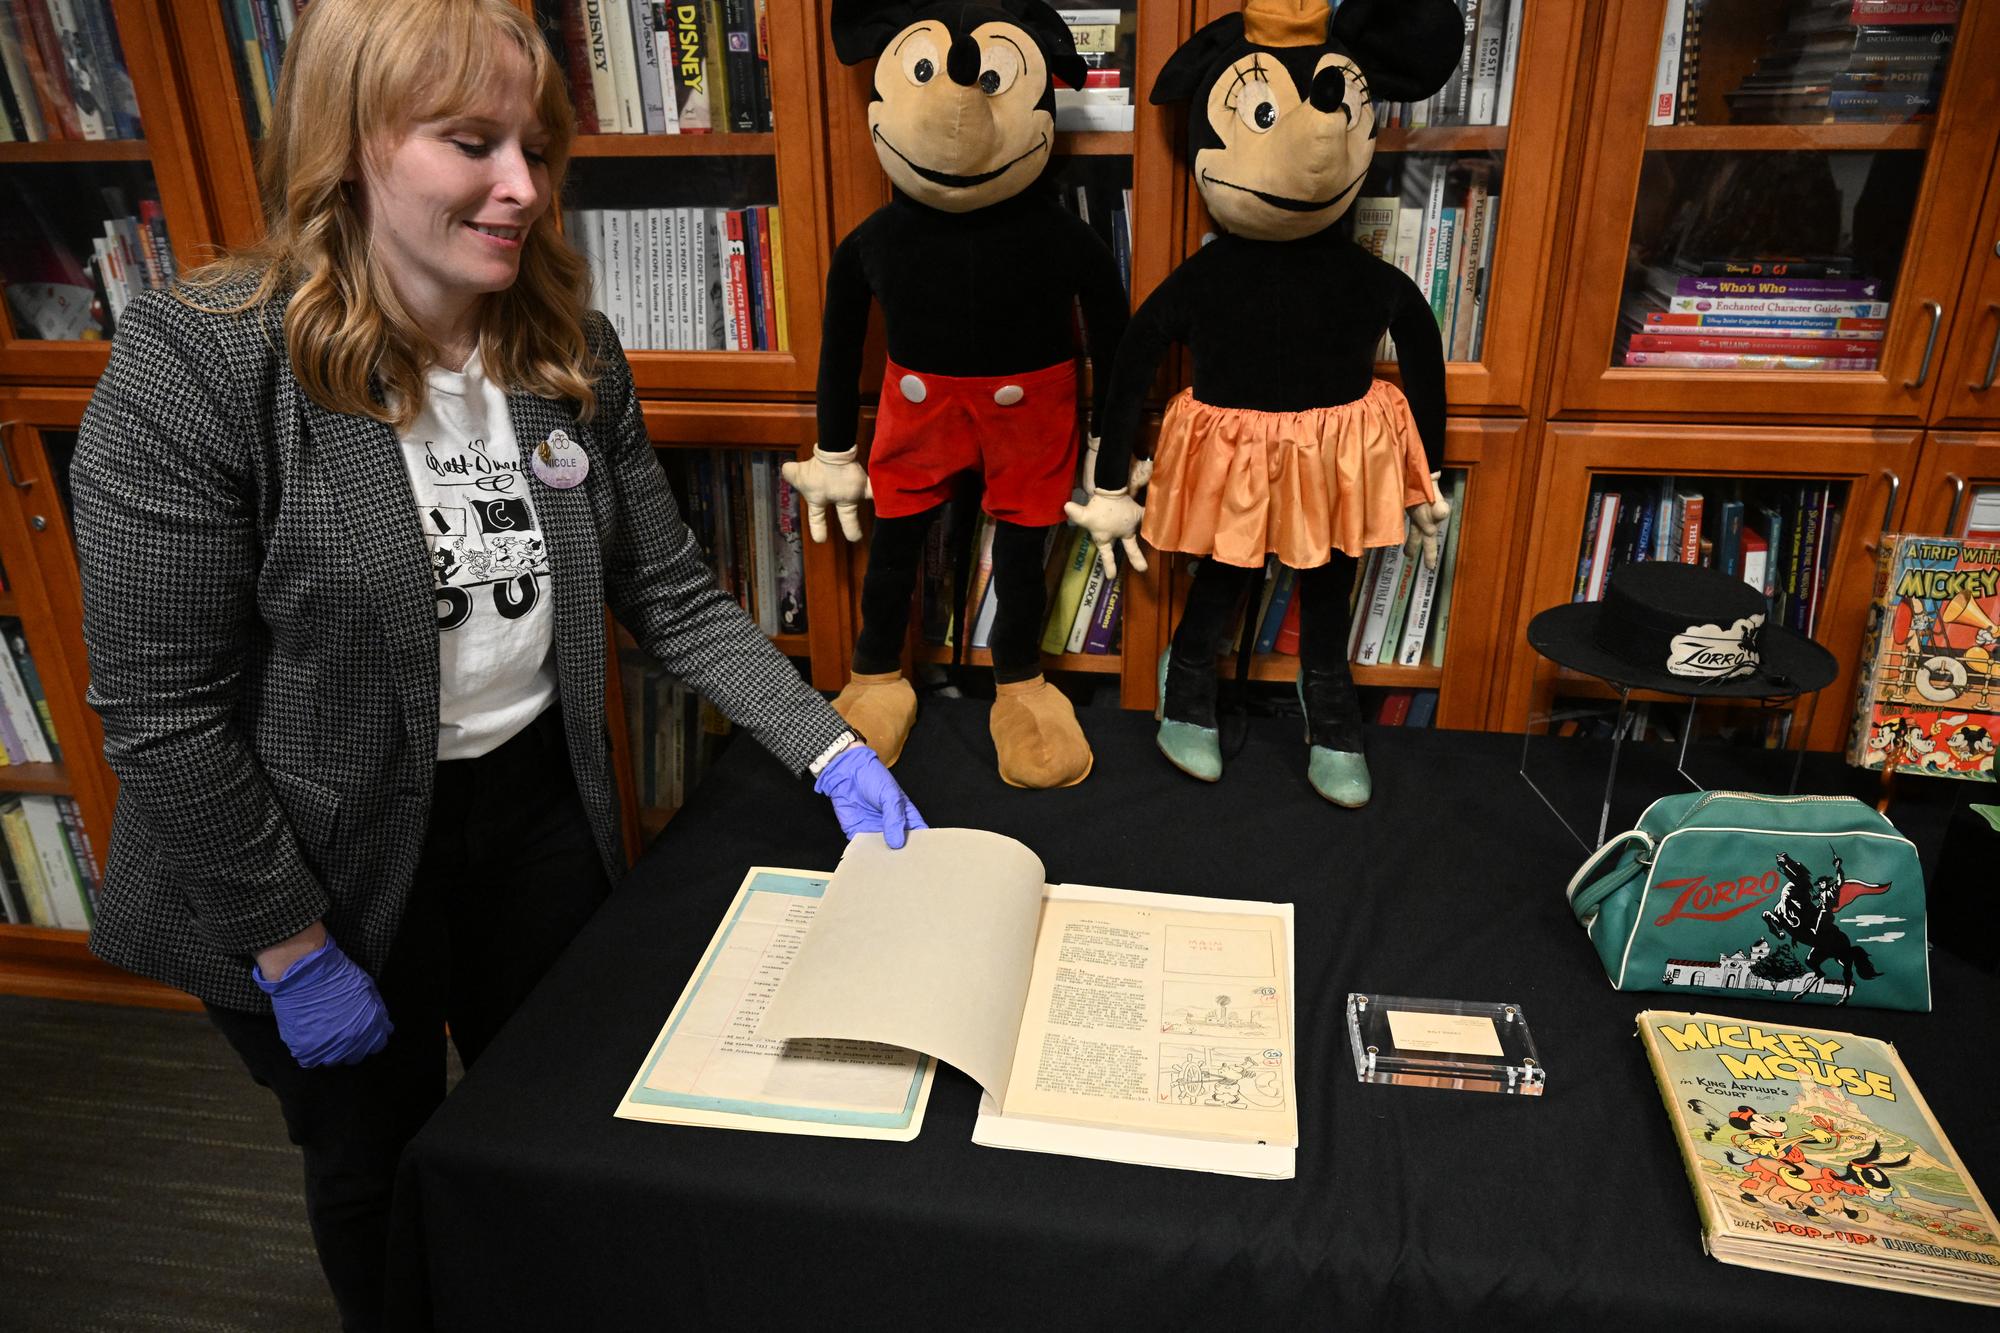 L'archiviste Nicole Carroll présente le scénario original de 1928 de "Steamboat Willie" de Disney, le premier dessin animé mettant en vedette Mickey Mouse. [afp - Robyn Beck]